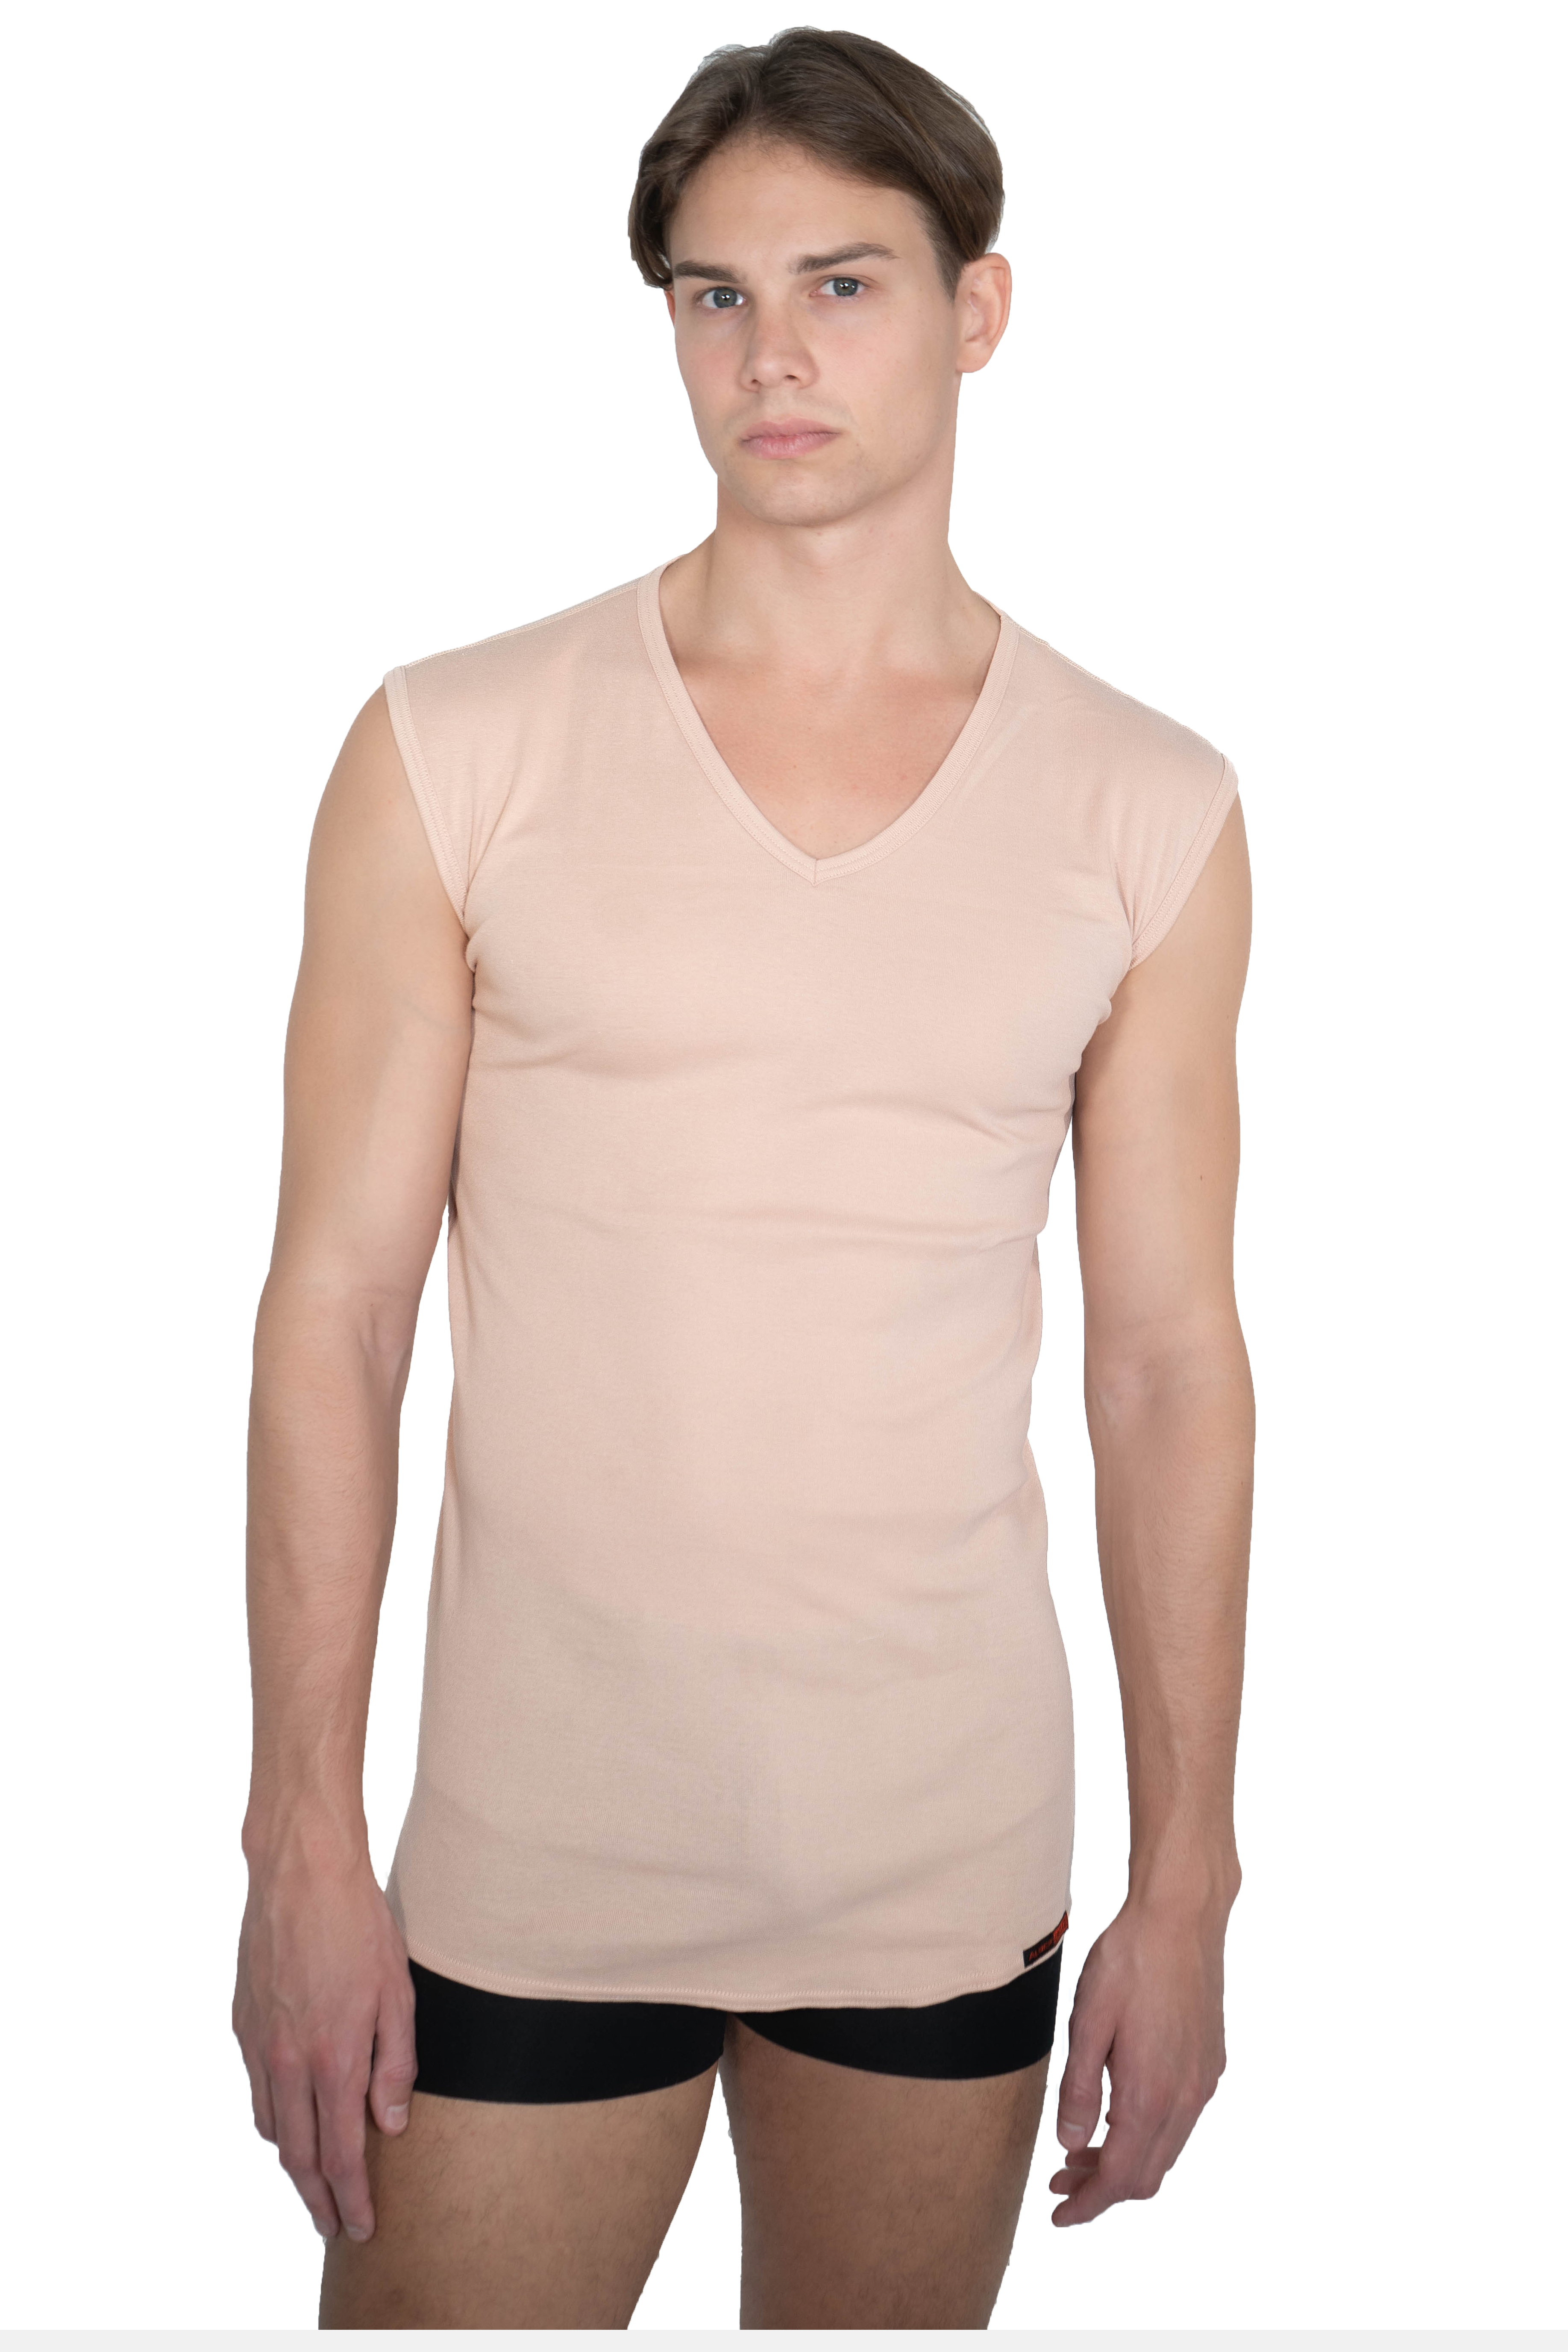 ALBERT KREUZ | Herren ohne Unterhemd Arm 100% V-Ausschnitt Bio-Baumwolle unsichtbar